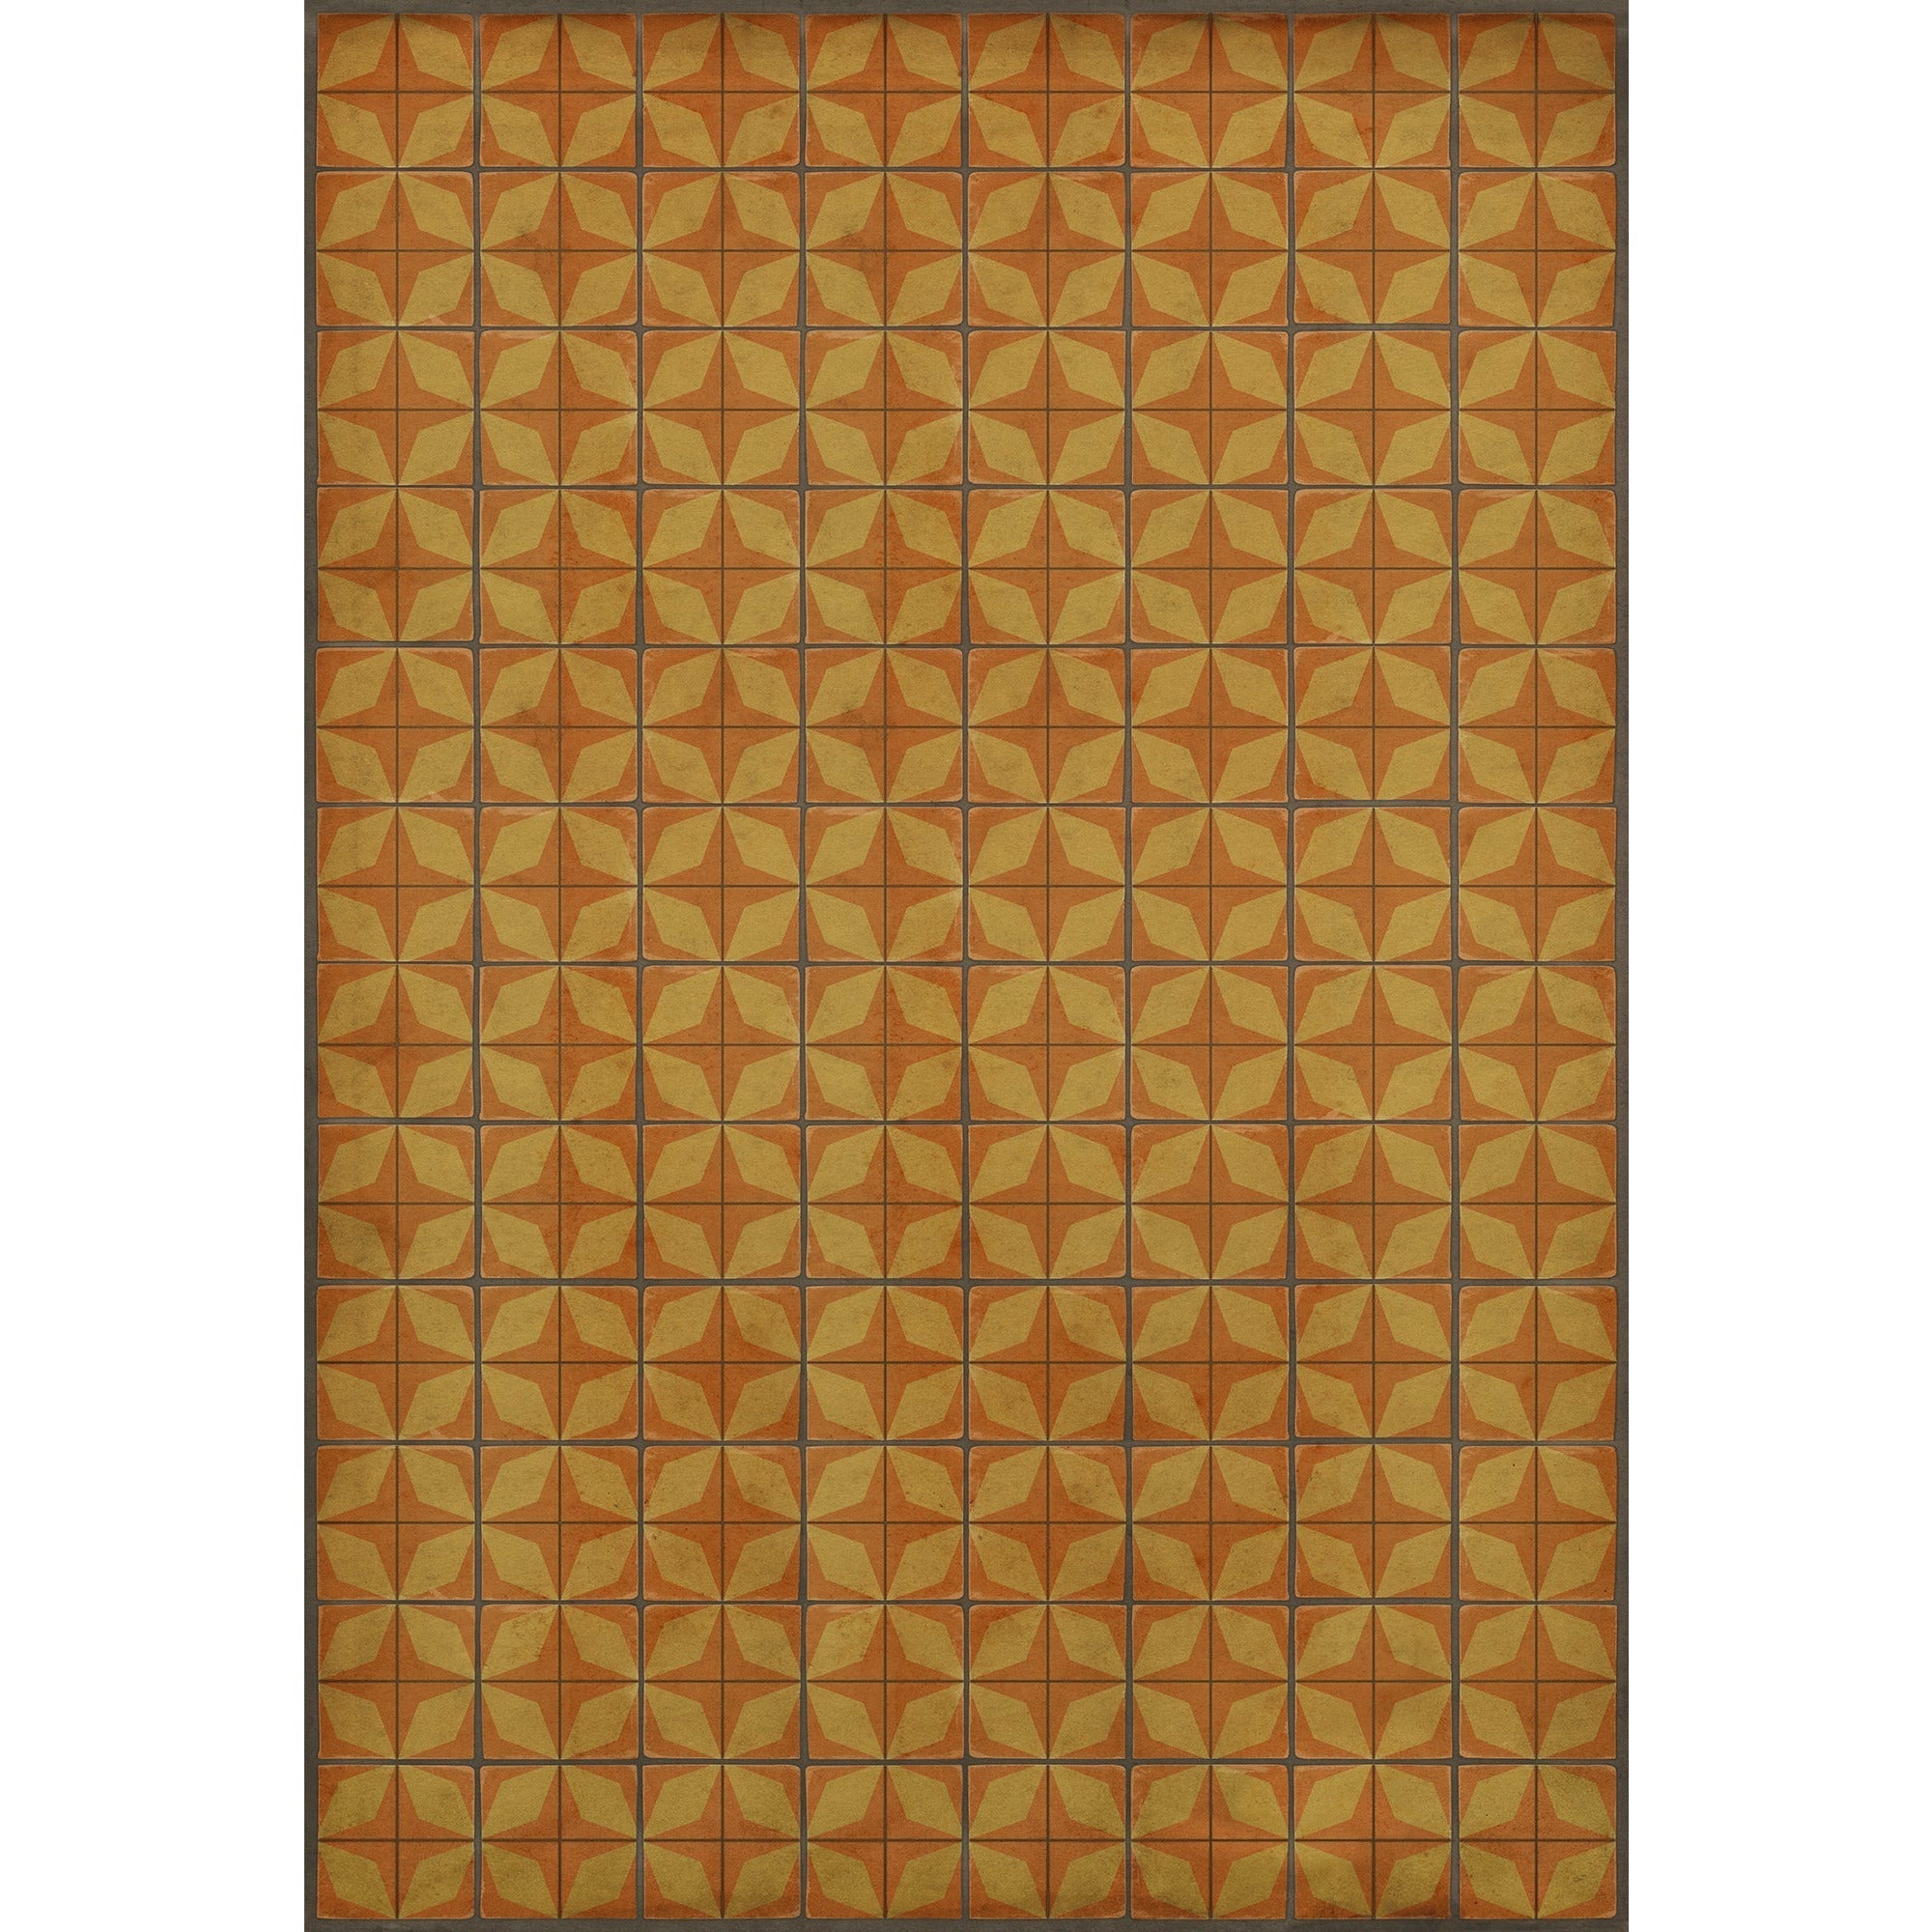 Pattern 54 Fireball Vinyl Floor Cloth